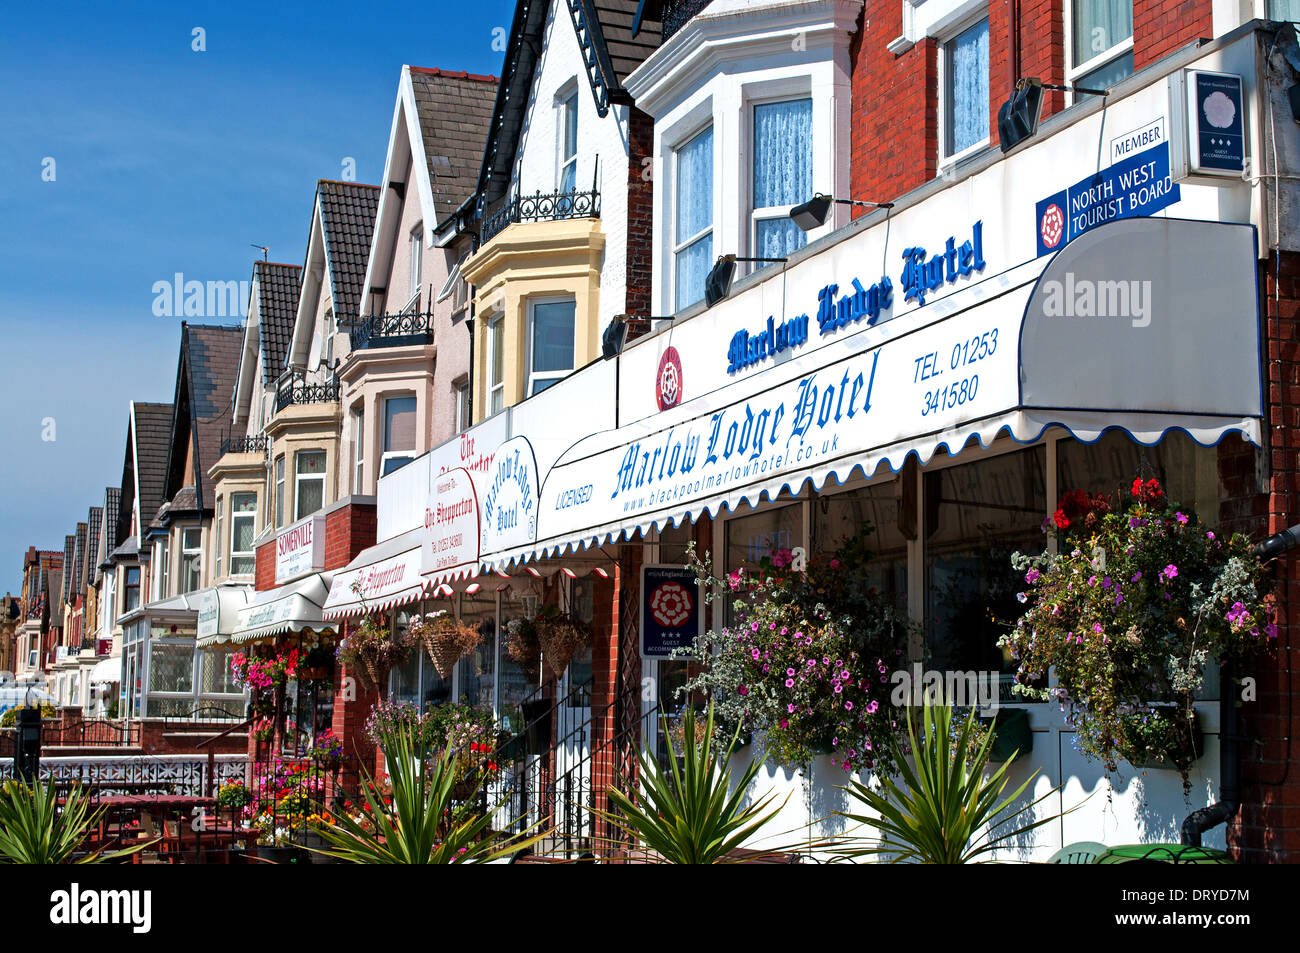 Hoteles y bed & breakfast establecimientos en Blackpool, Reino Unido Foto de stock